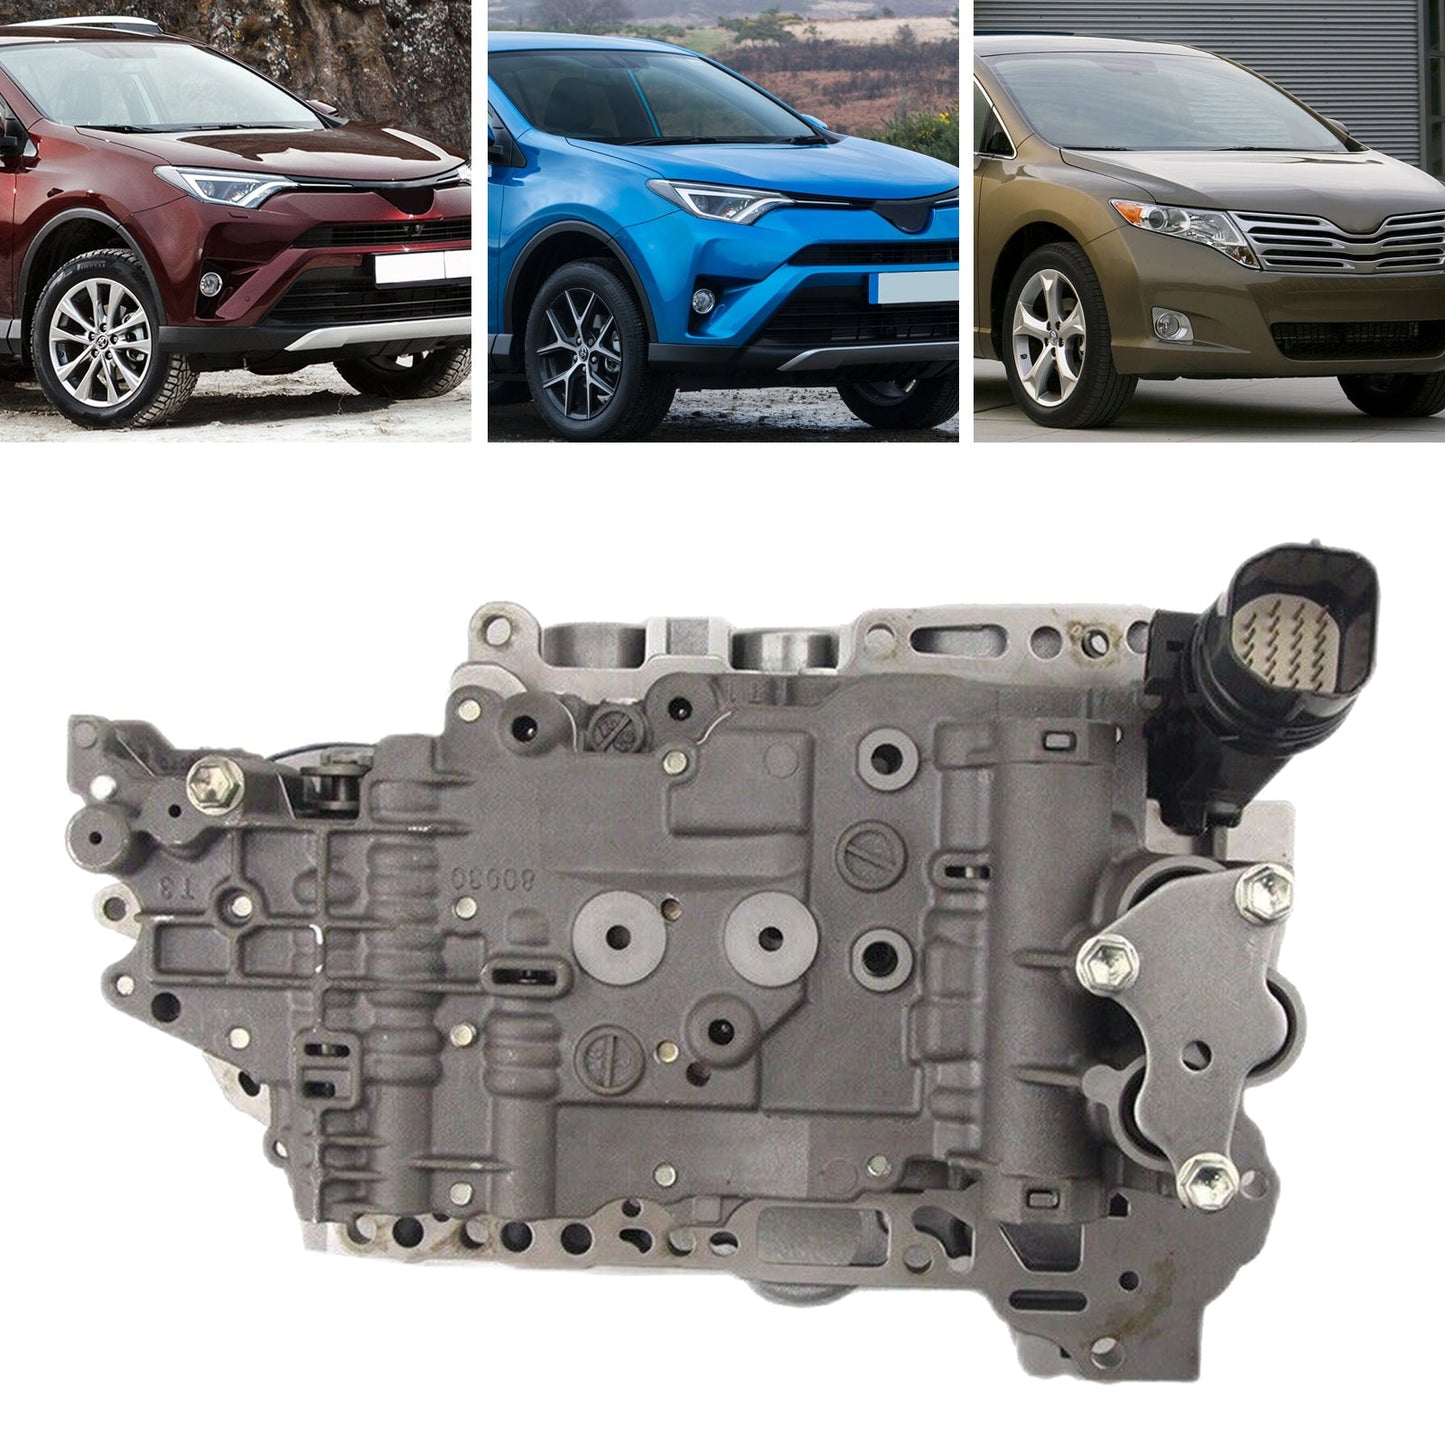 Toyota CAMRY 2009-2011 2.4L 2.5L U760E U760 TOYOTA RAV4 Transmission Valve Body